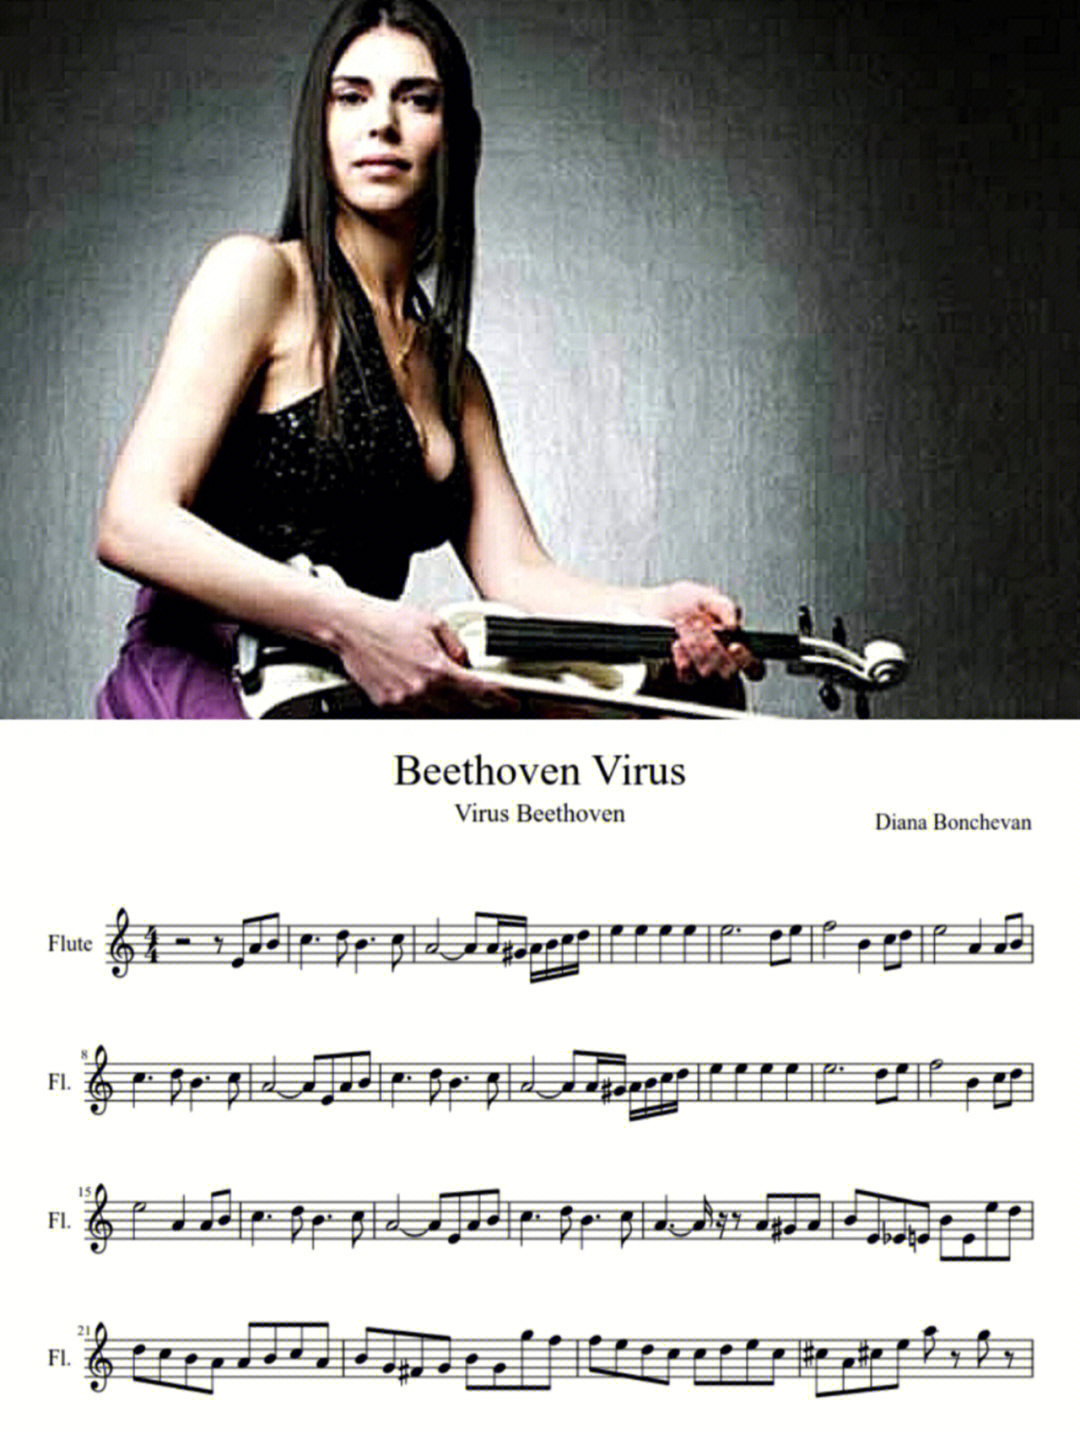 贝多芬病毒小提琴谱子图片